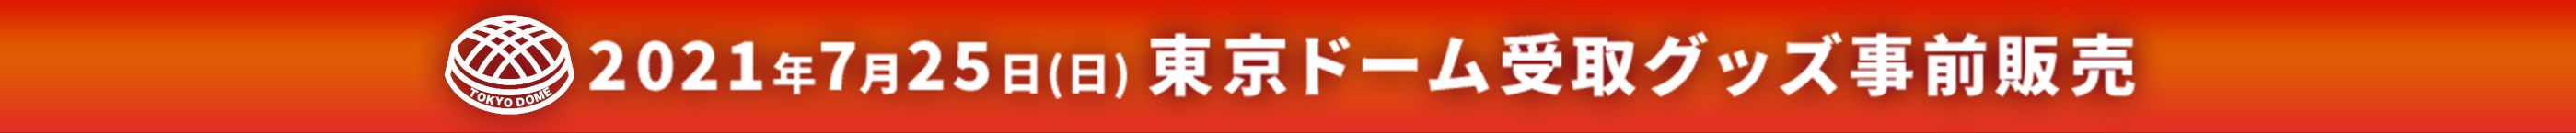 映画『ゴジラvsコング』Presents WRESTLE GRAND SLAM 東京ドーム会場受取公式ショップ_スケジュール